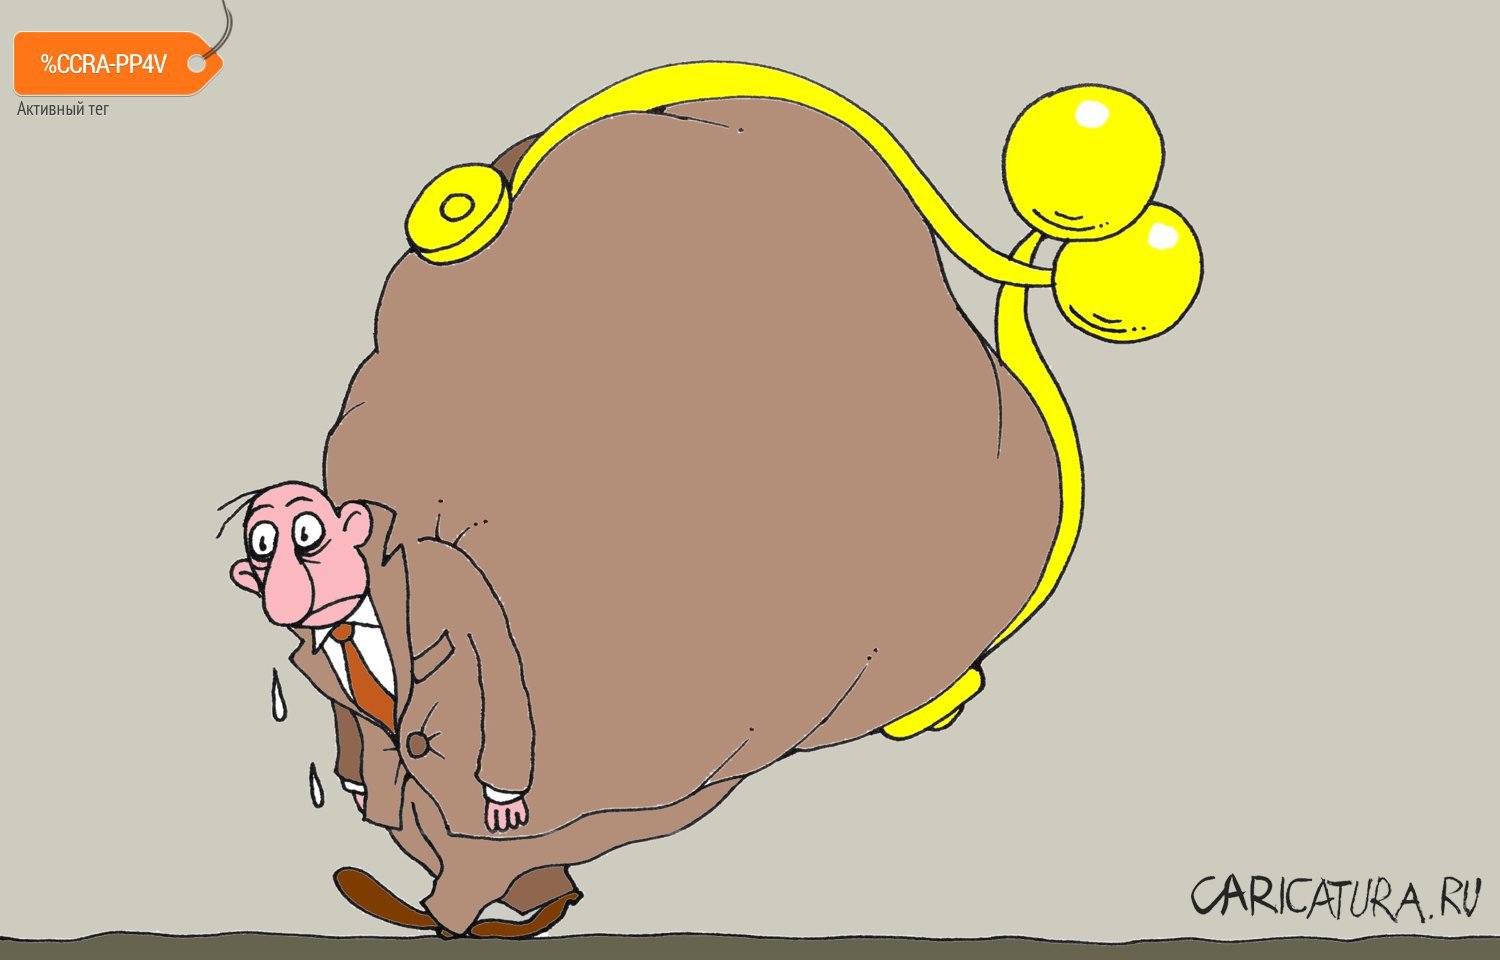 Карикатура "Все свое...", Михаил Ларичев